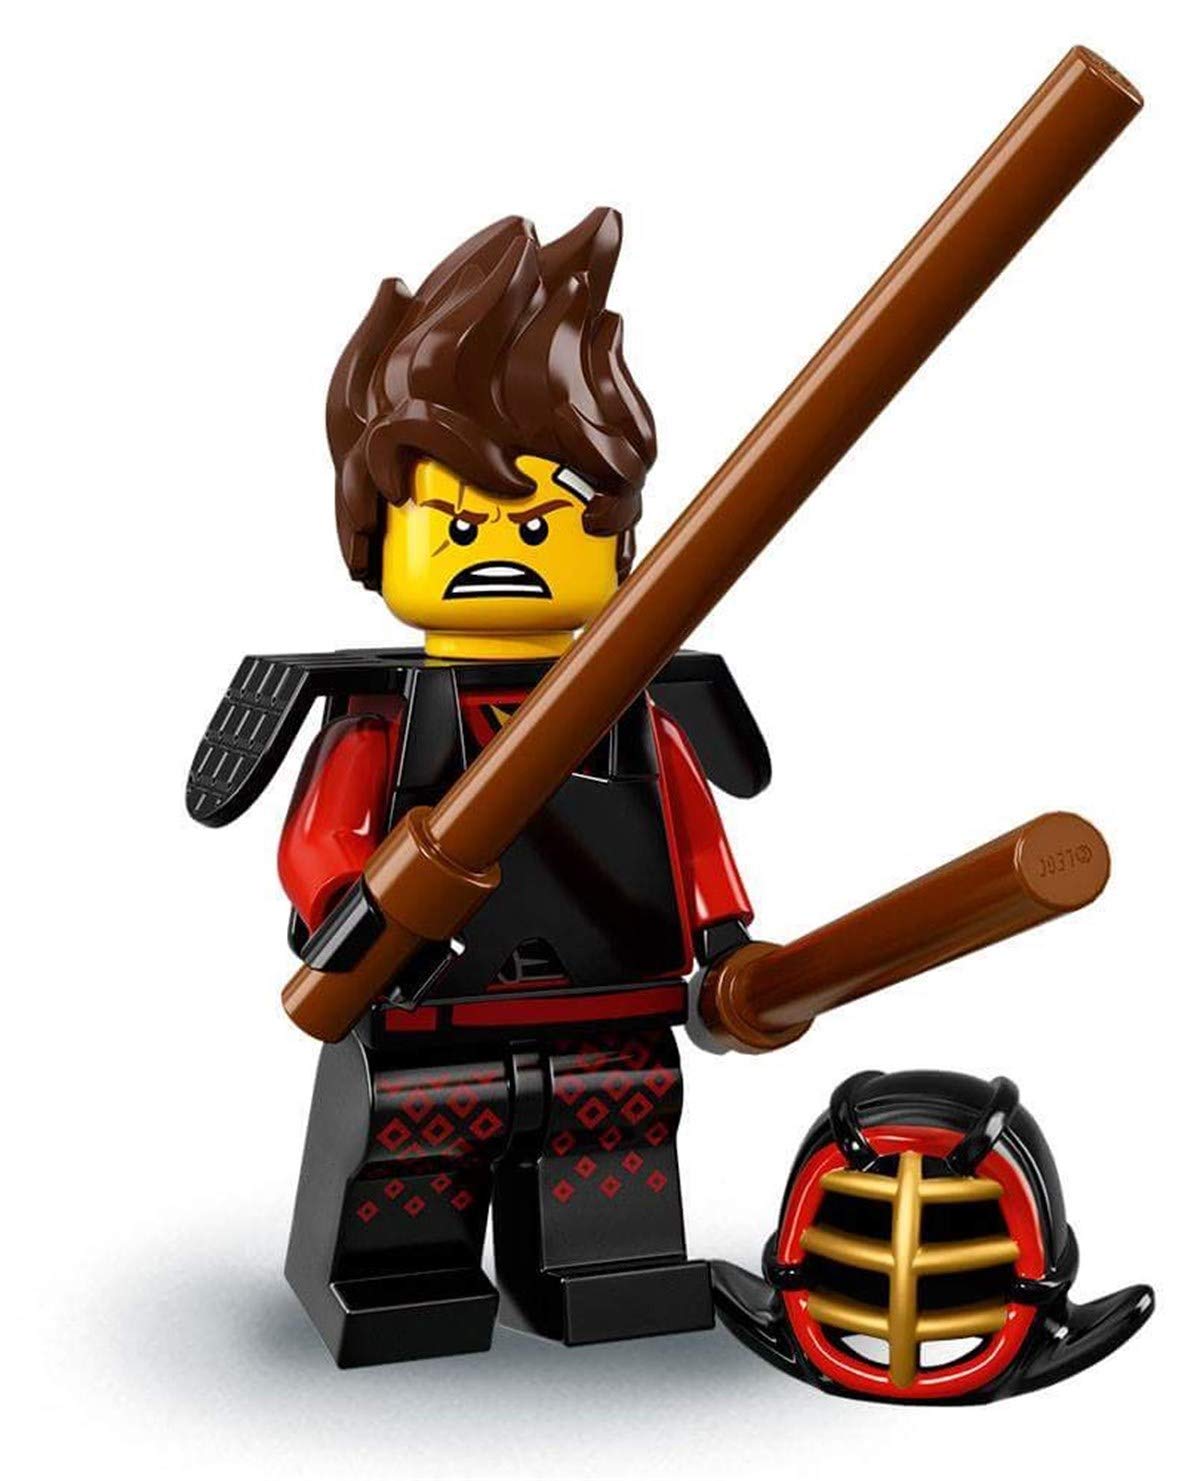 Lego Ninjago Movie Minif Igures Series 71019 – Kai Kendo